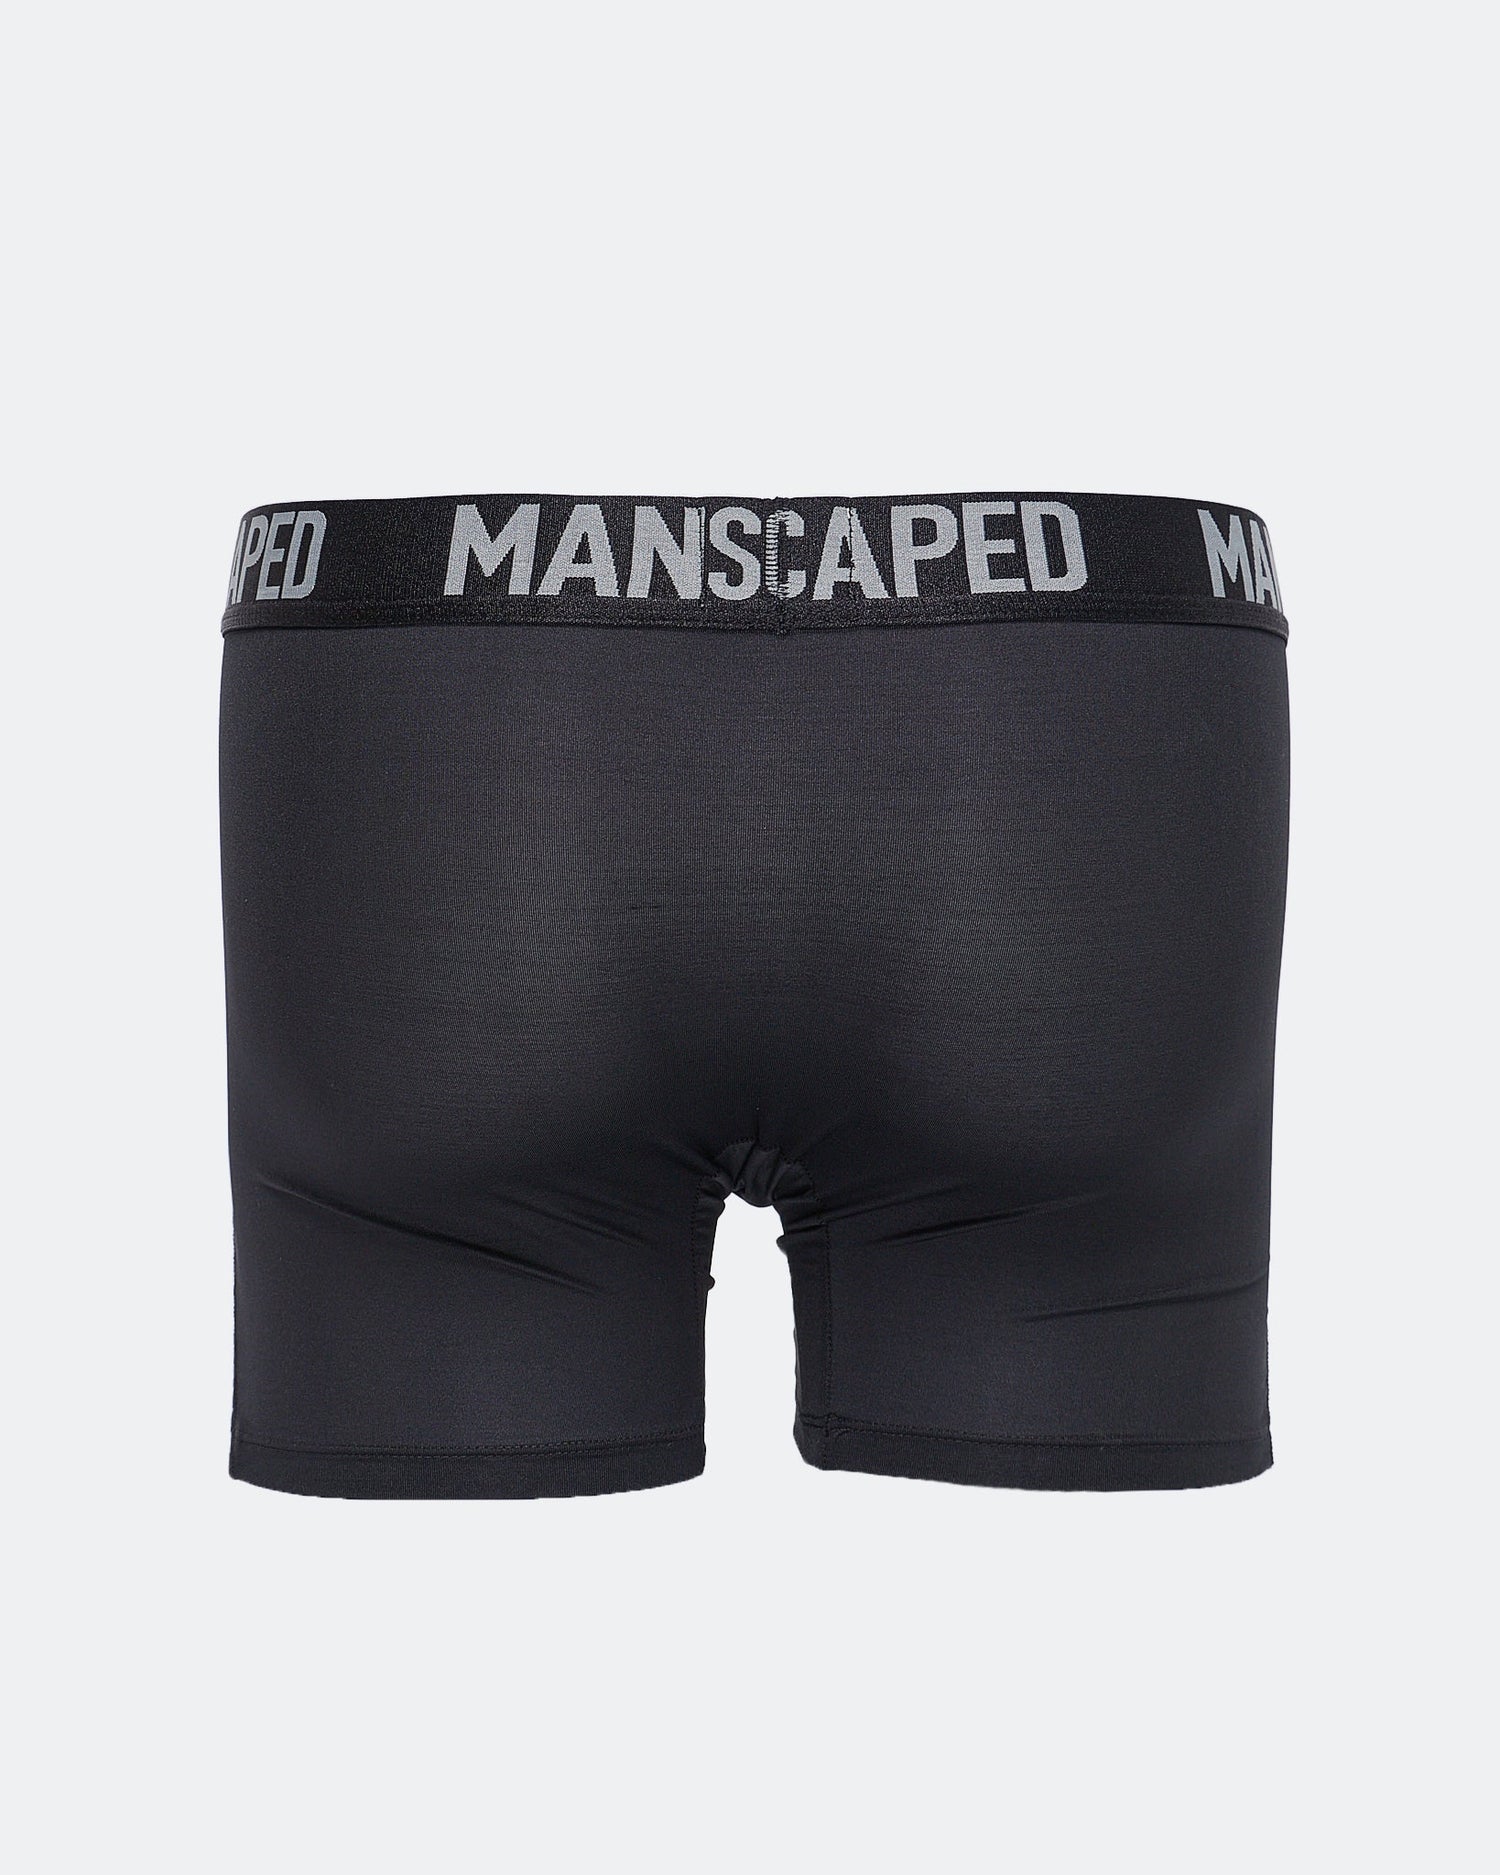 Logo Waistband Printed Men Underwear 6.90